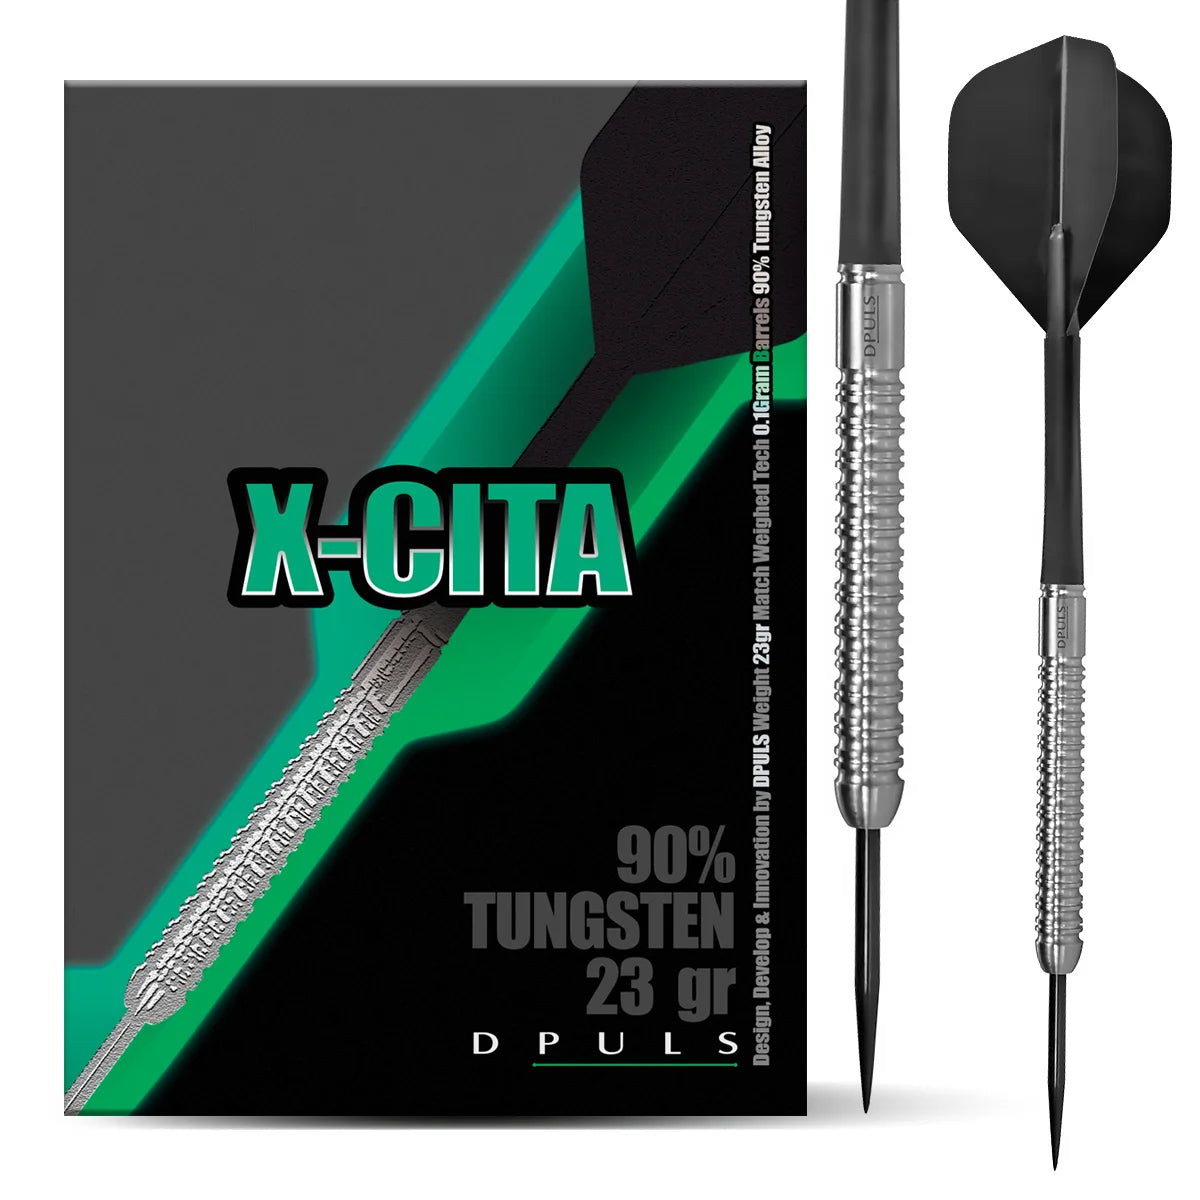 DPULS X-CITA Steel Darts 23g/90%